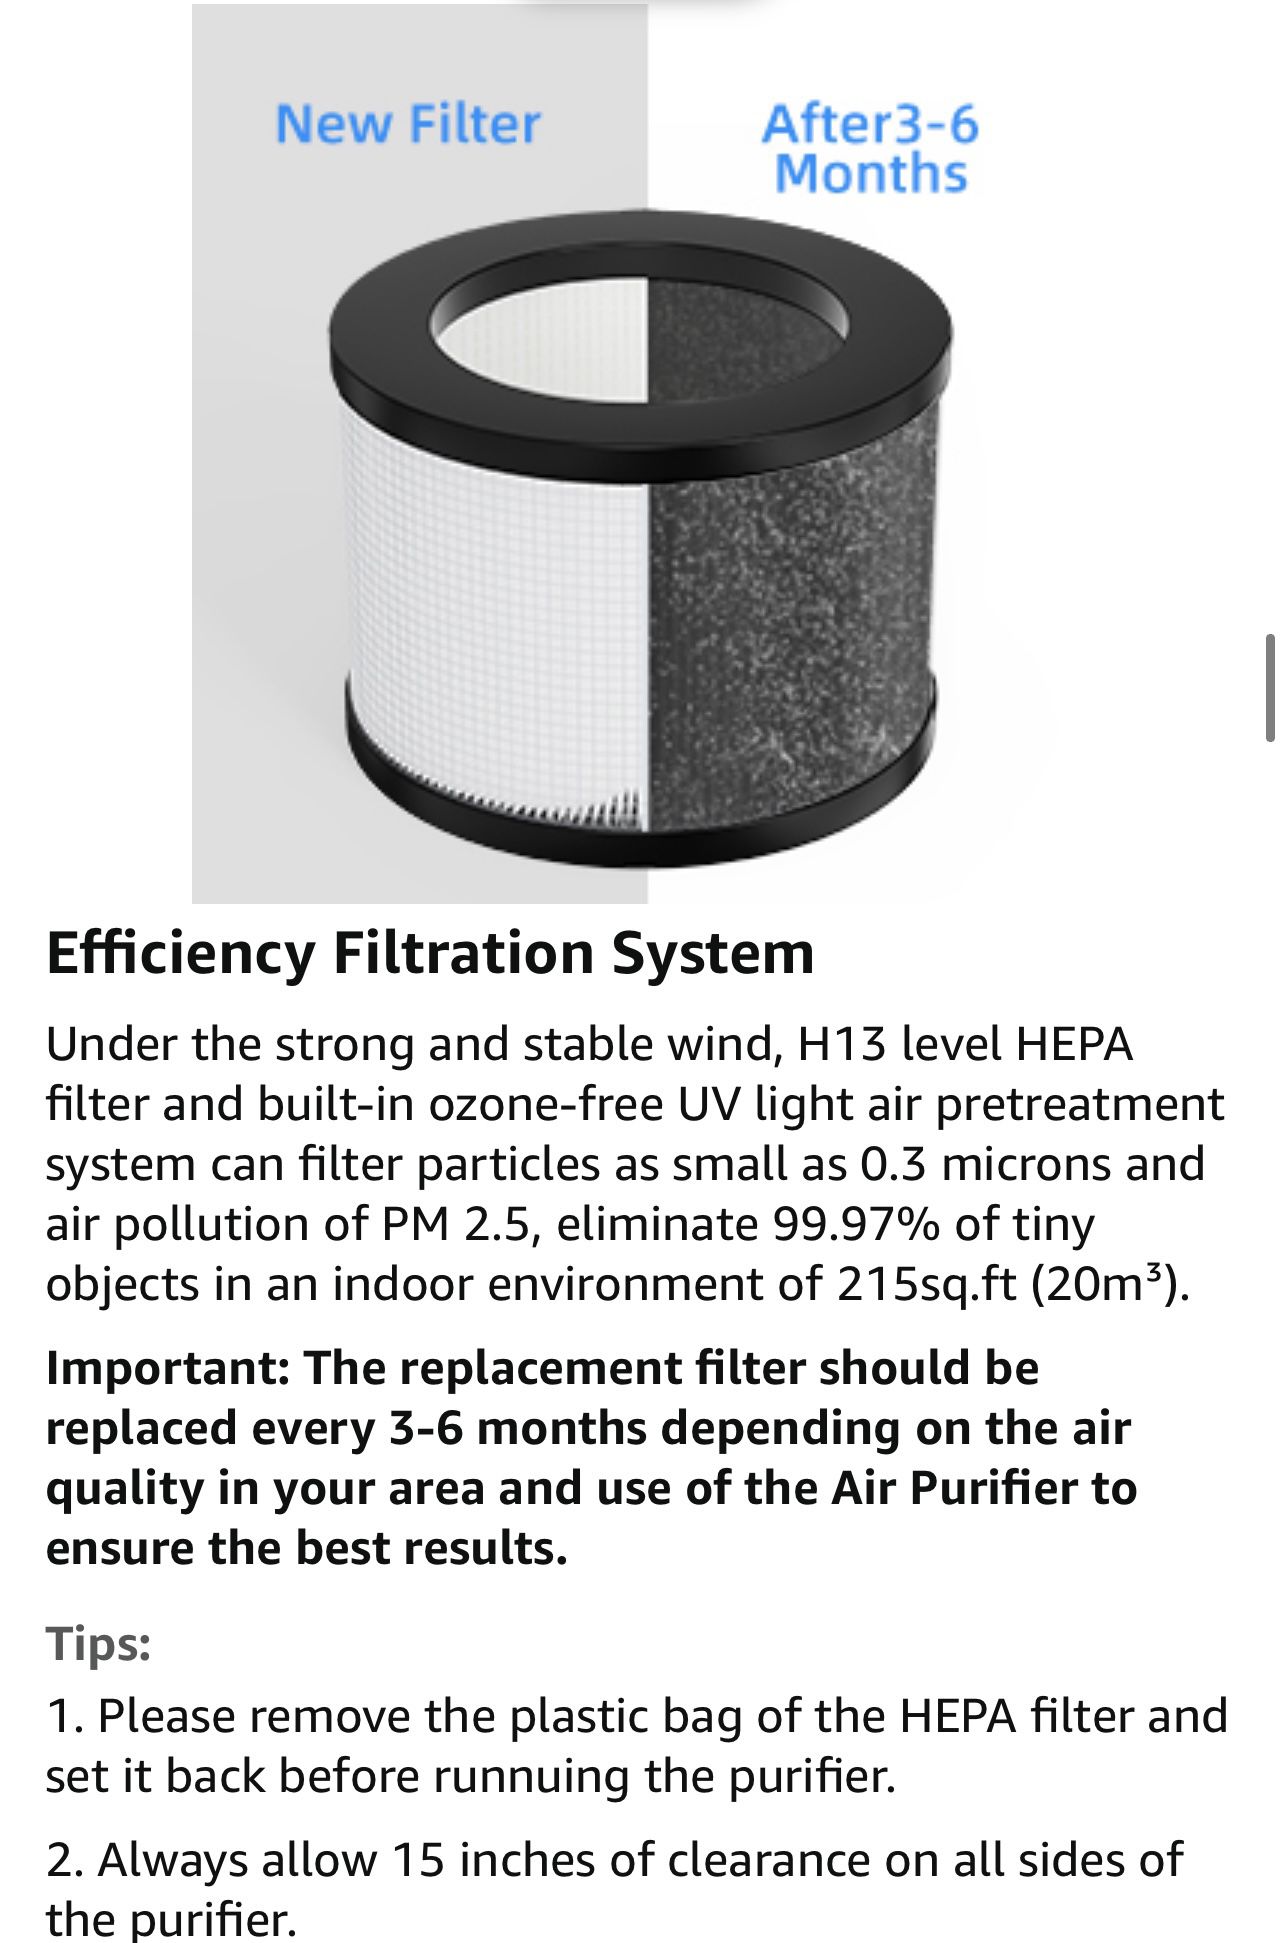 Portable air purifier new